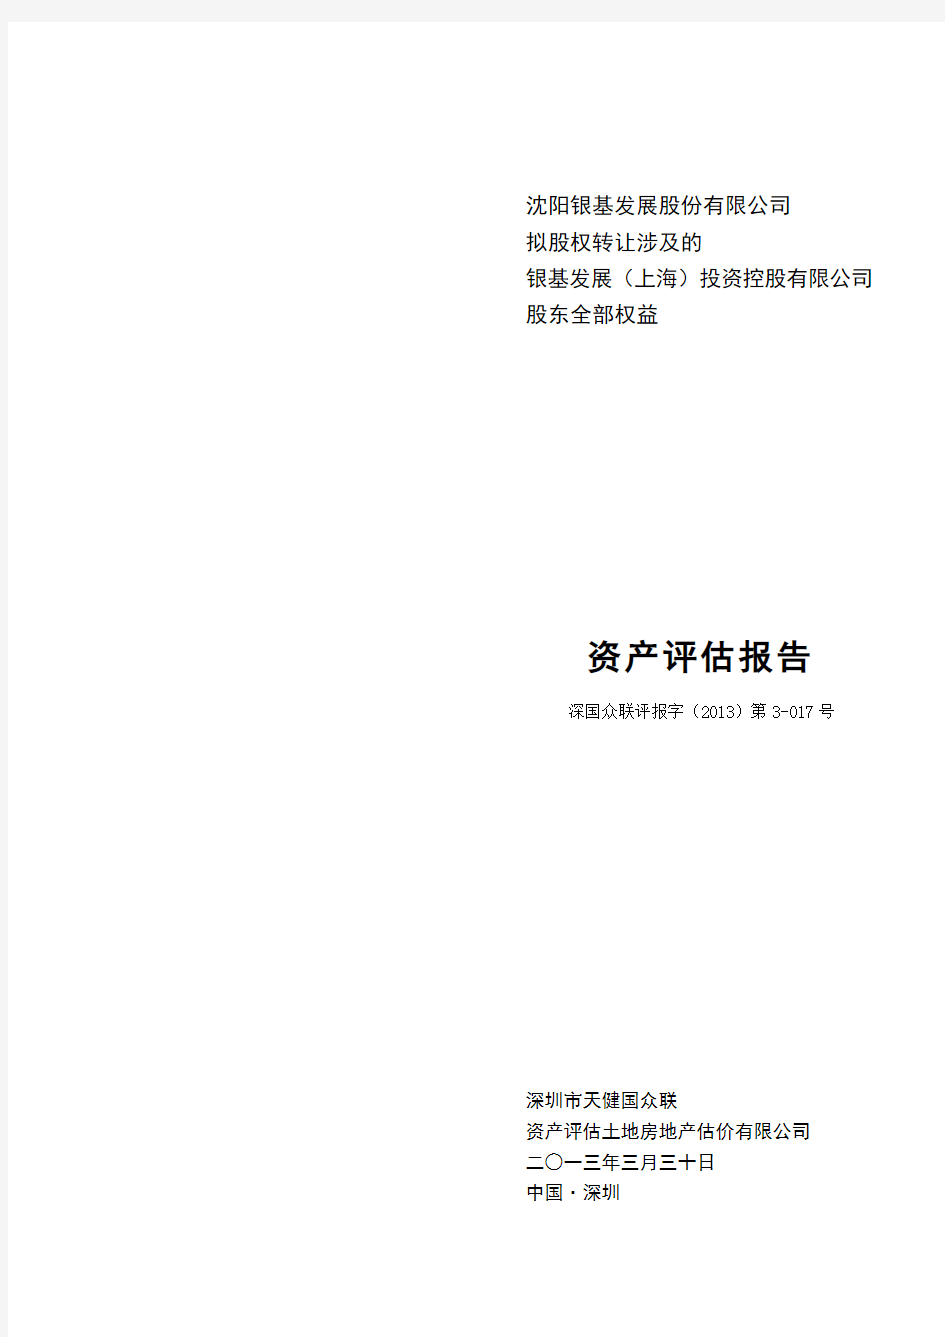 (上海)投资控股有限公司股东全部权益资产评估报告